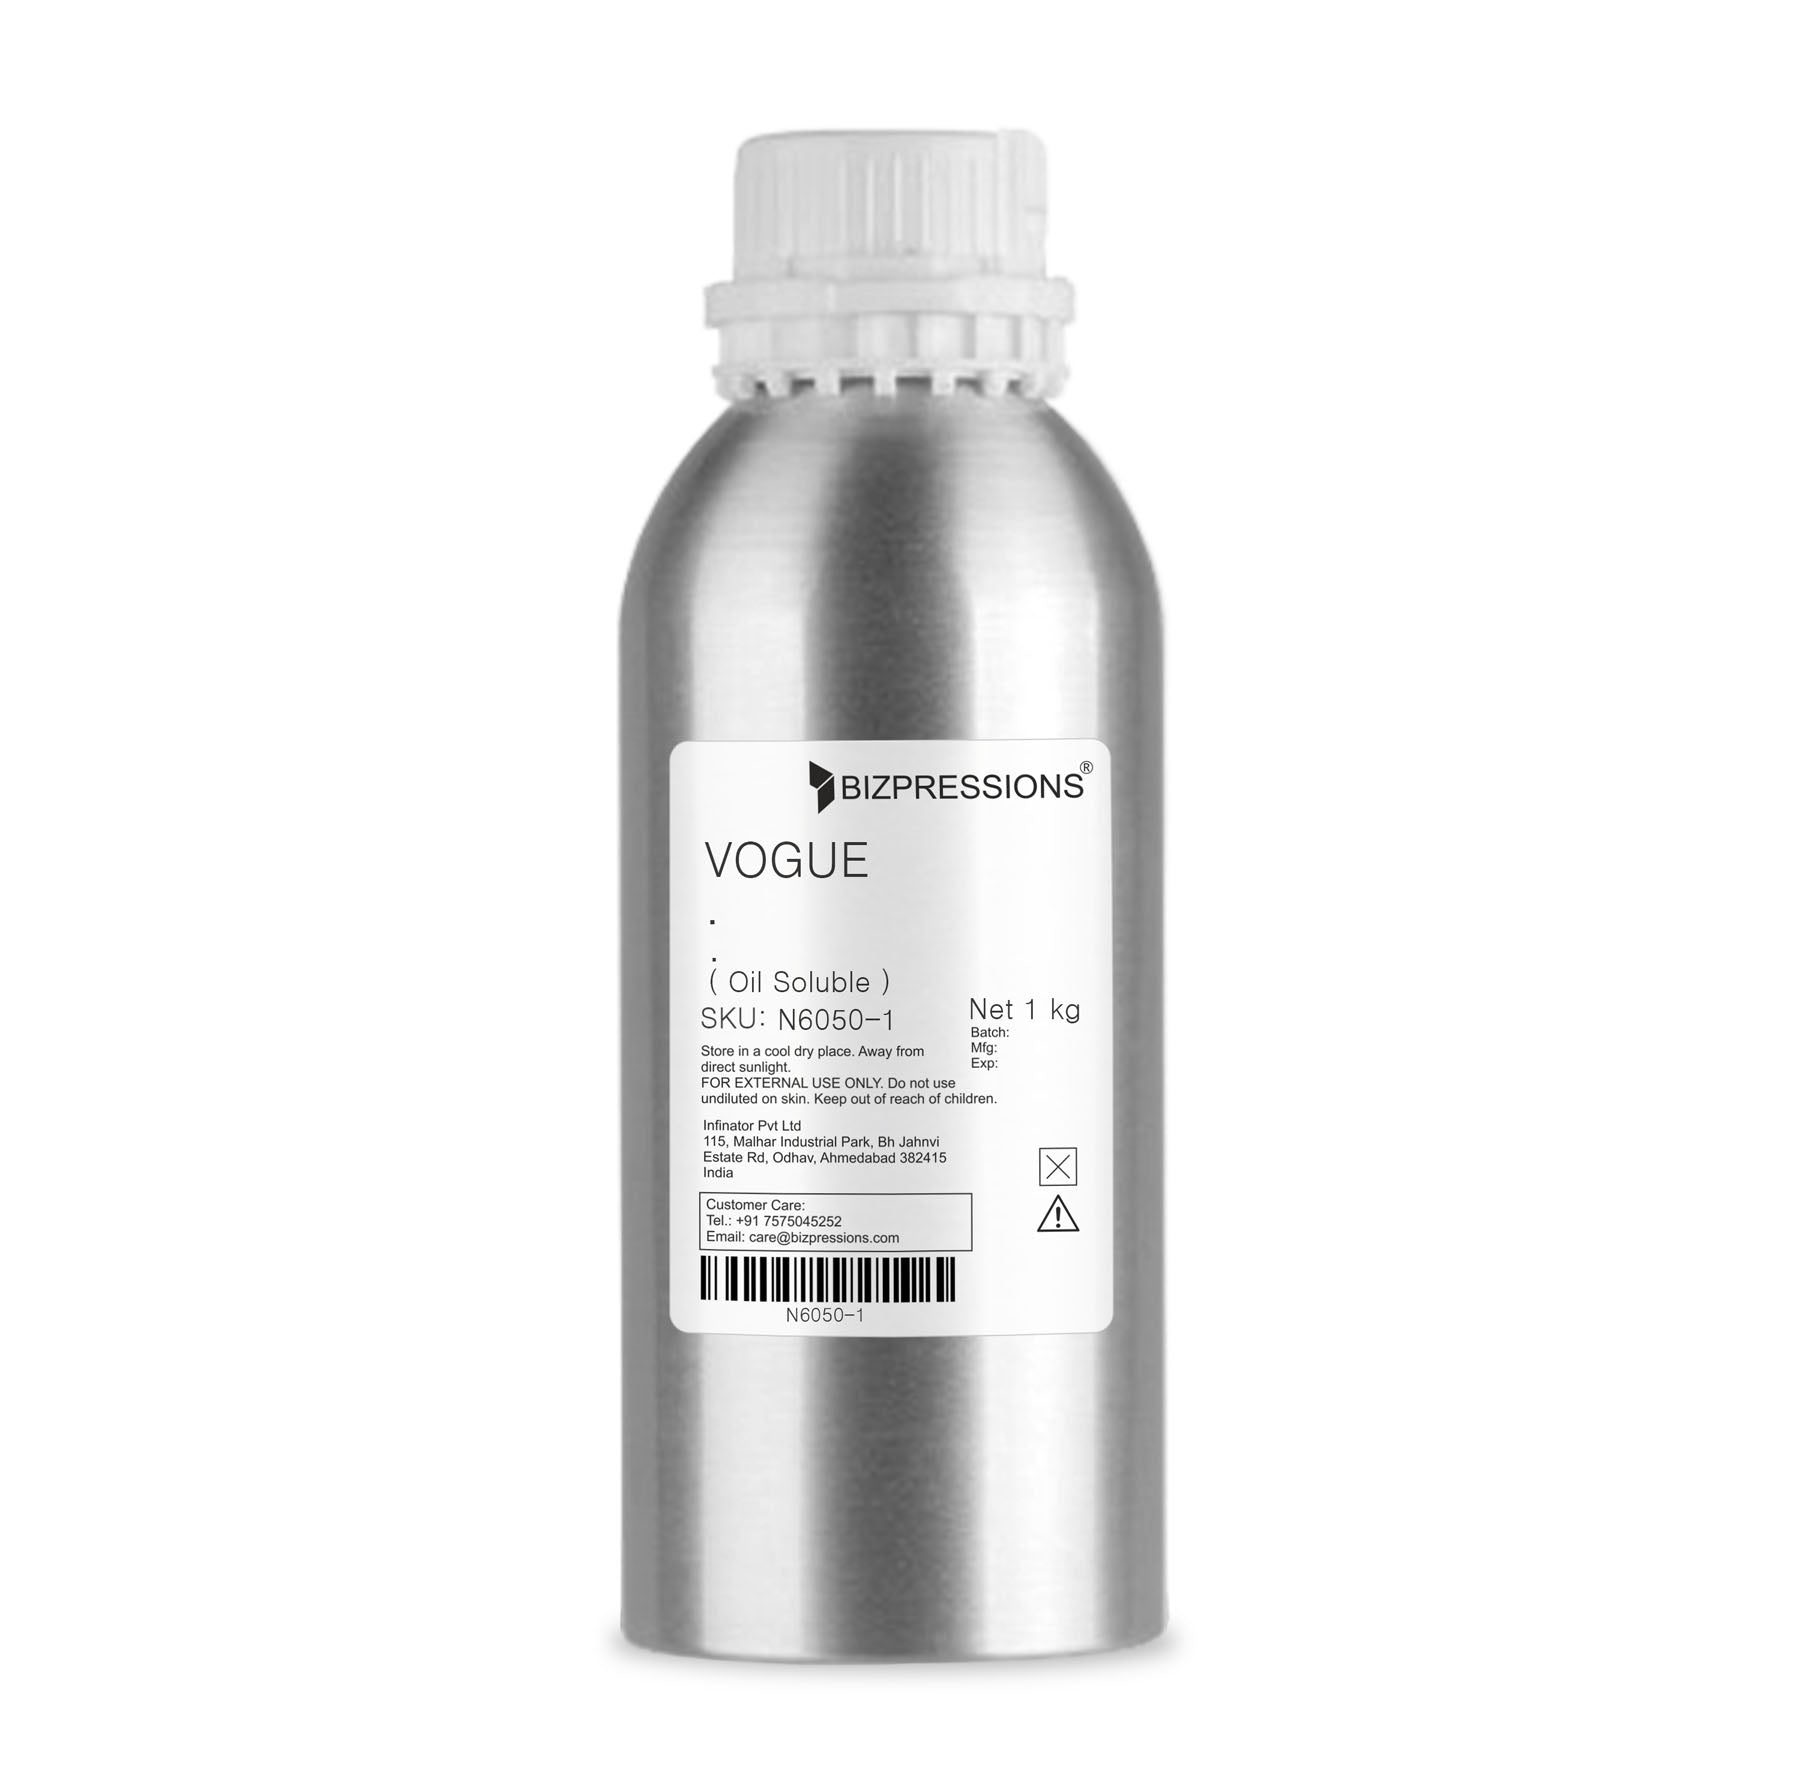 VOGUE - Fragrance ( Oil Soluble ) - 1 kg